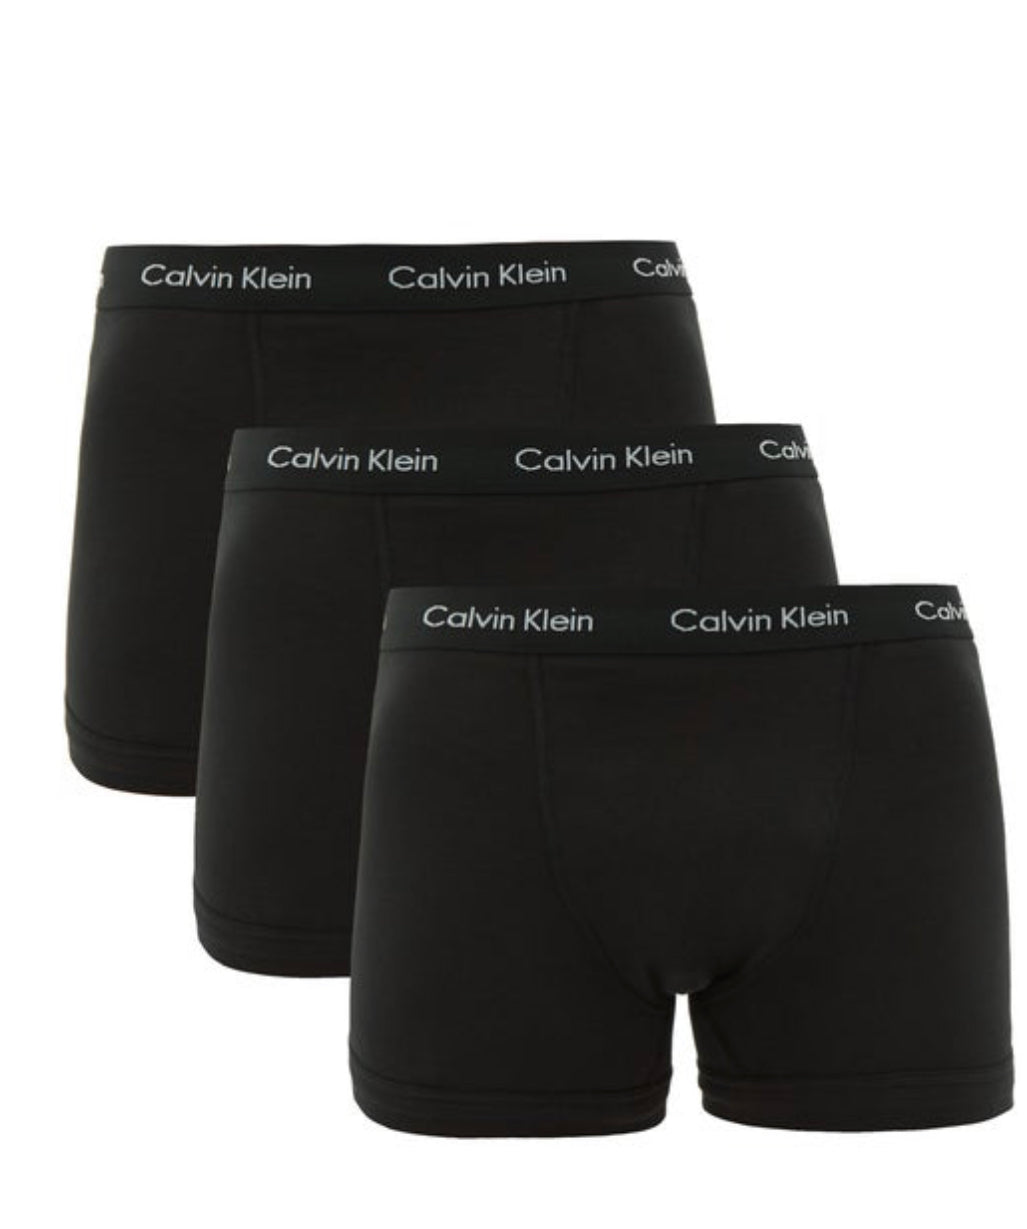 Calvin Klein Men's Underwear Cotton Stretch Trunk 3 Pack - Black/Black/Black